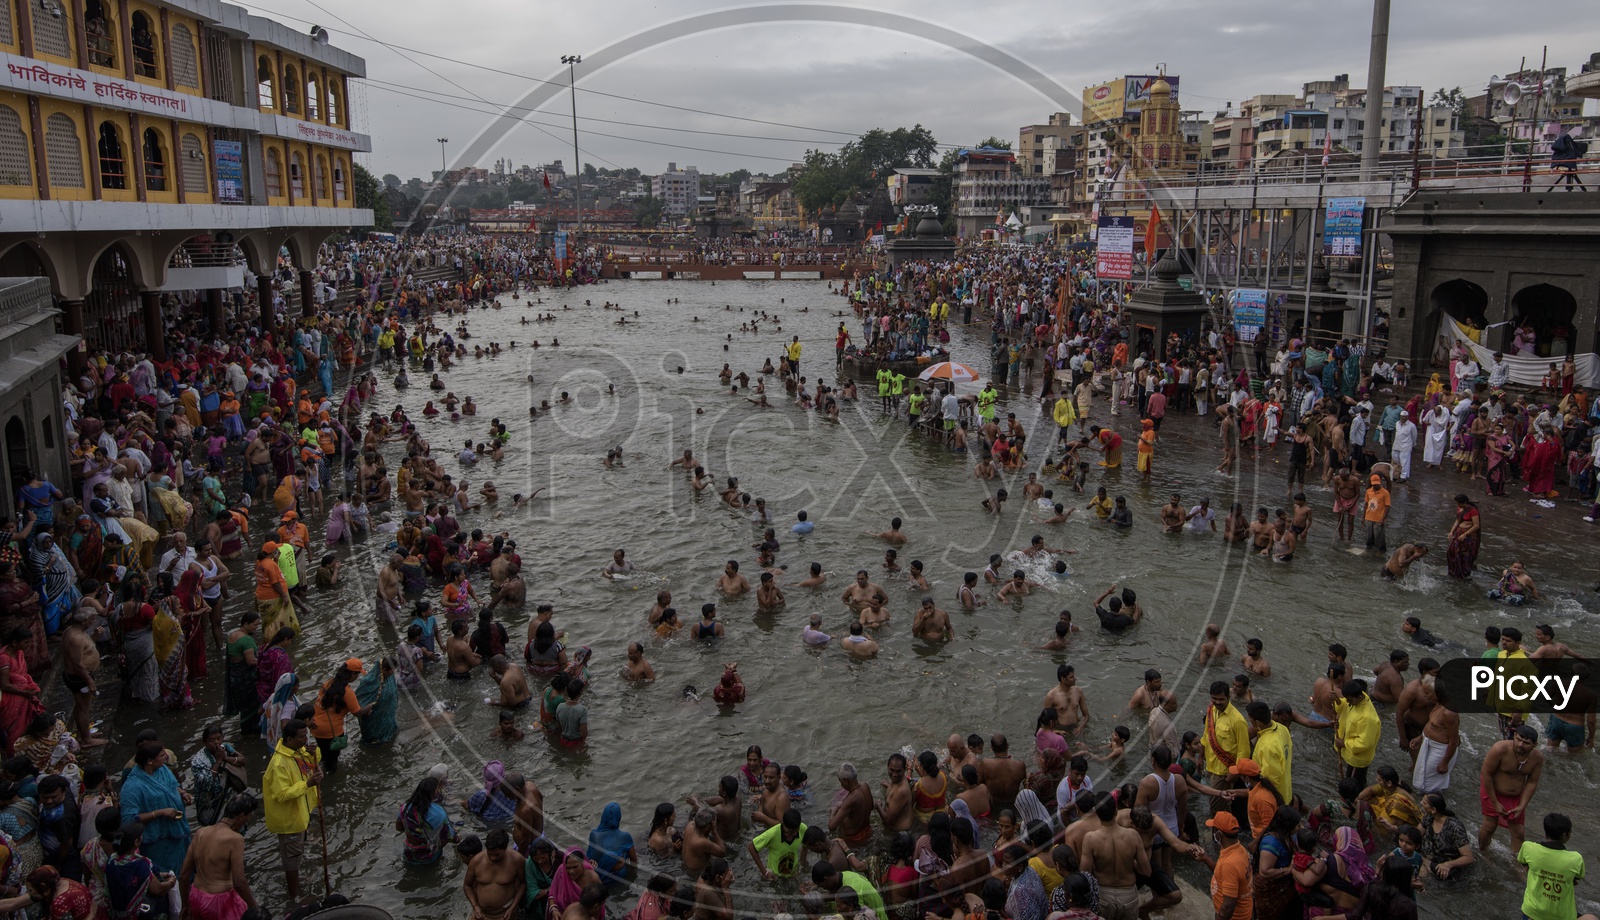 Devotees taking bath in the river at Nasik